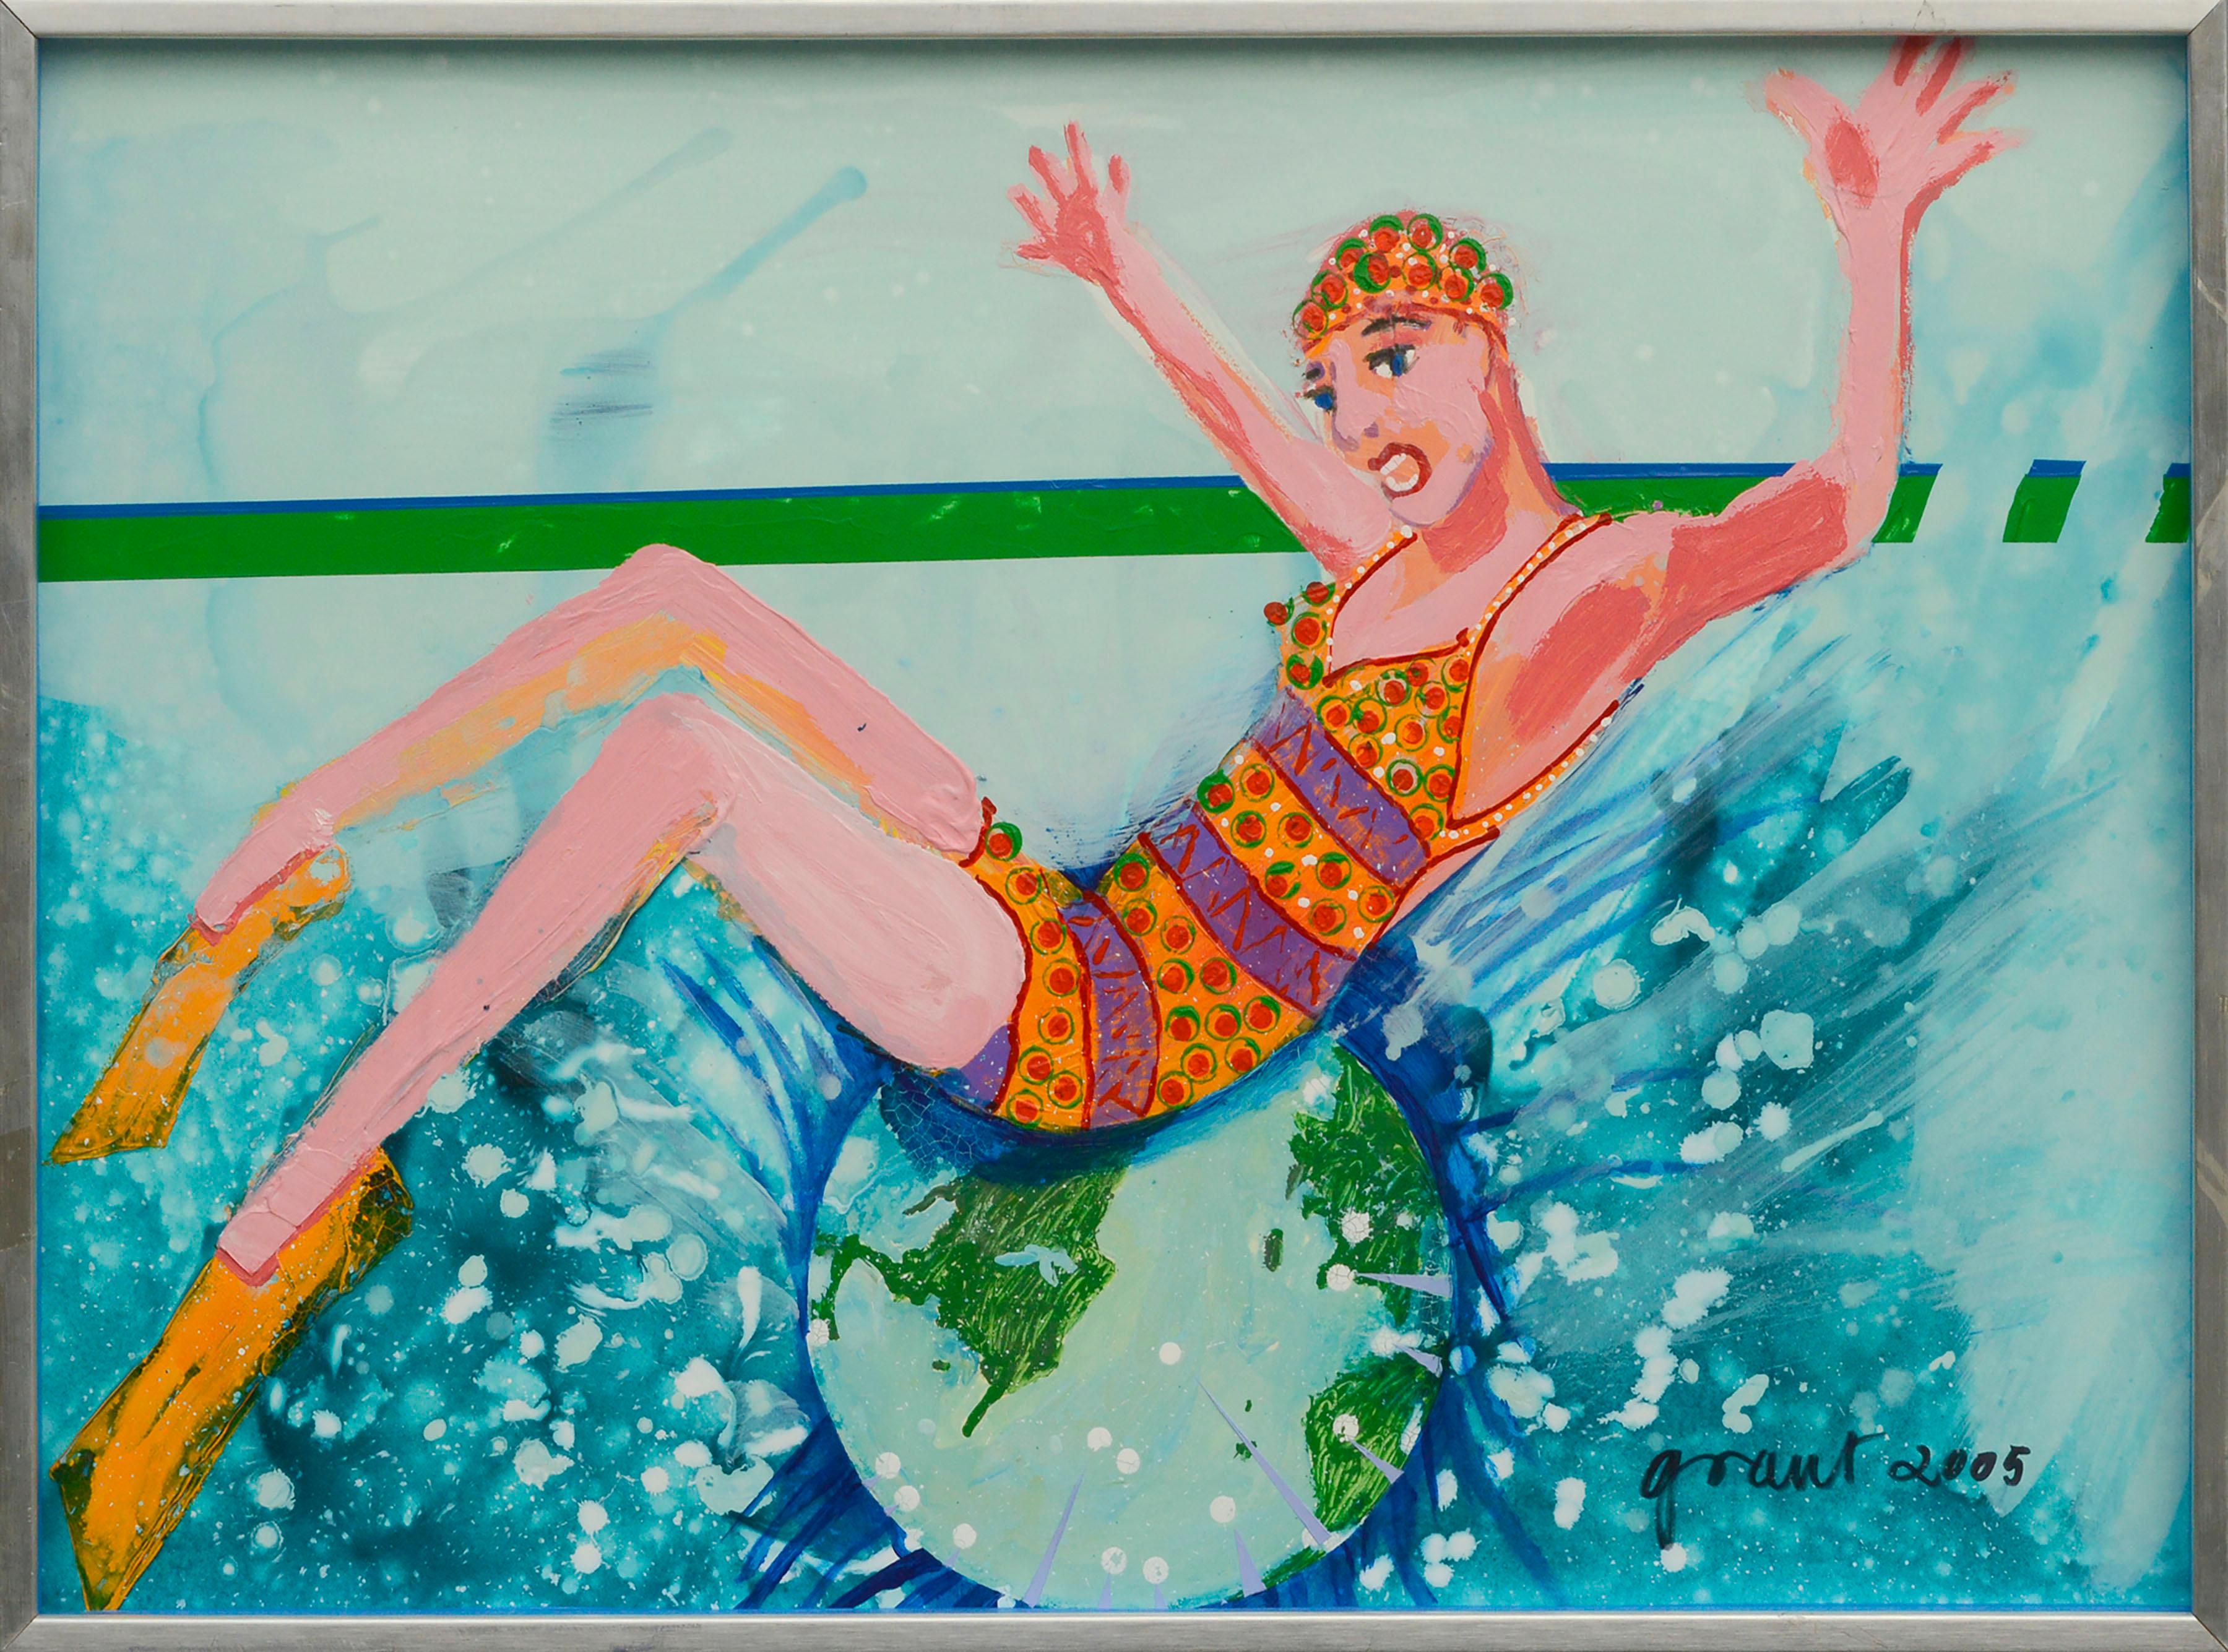 ""Make a Splash"", Großformatige figurative abstrakte Skulptur mit Swimmer im Pool 